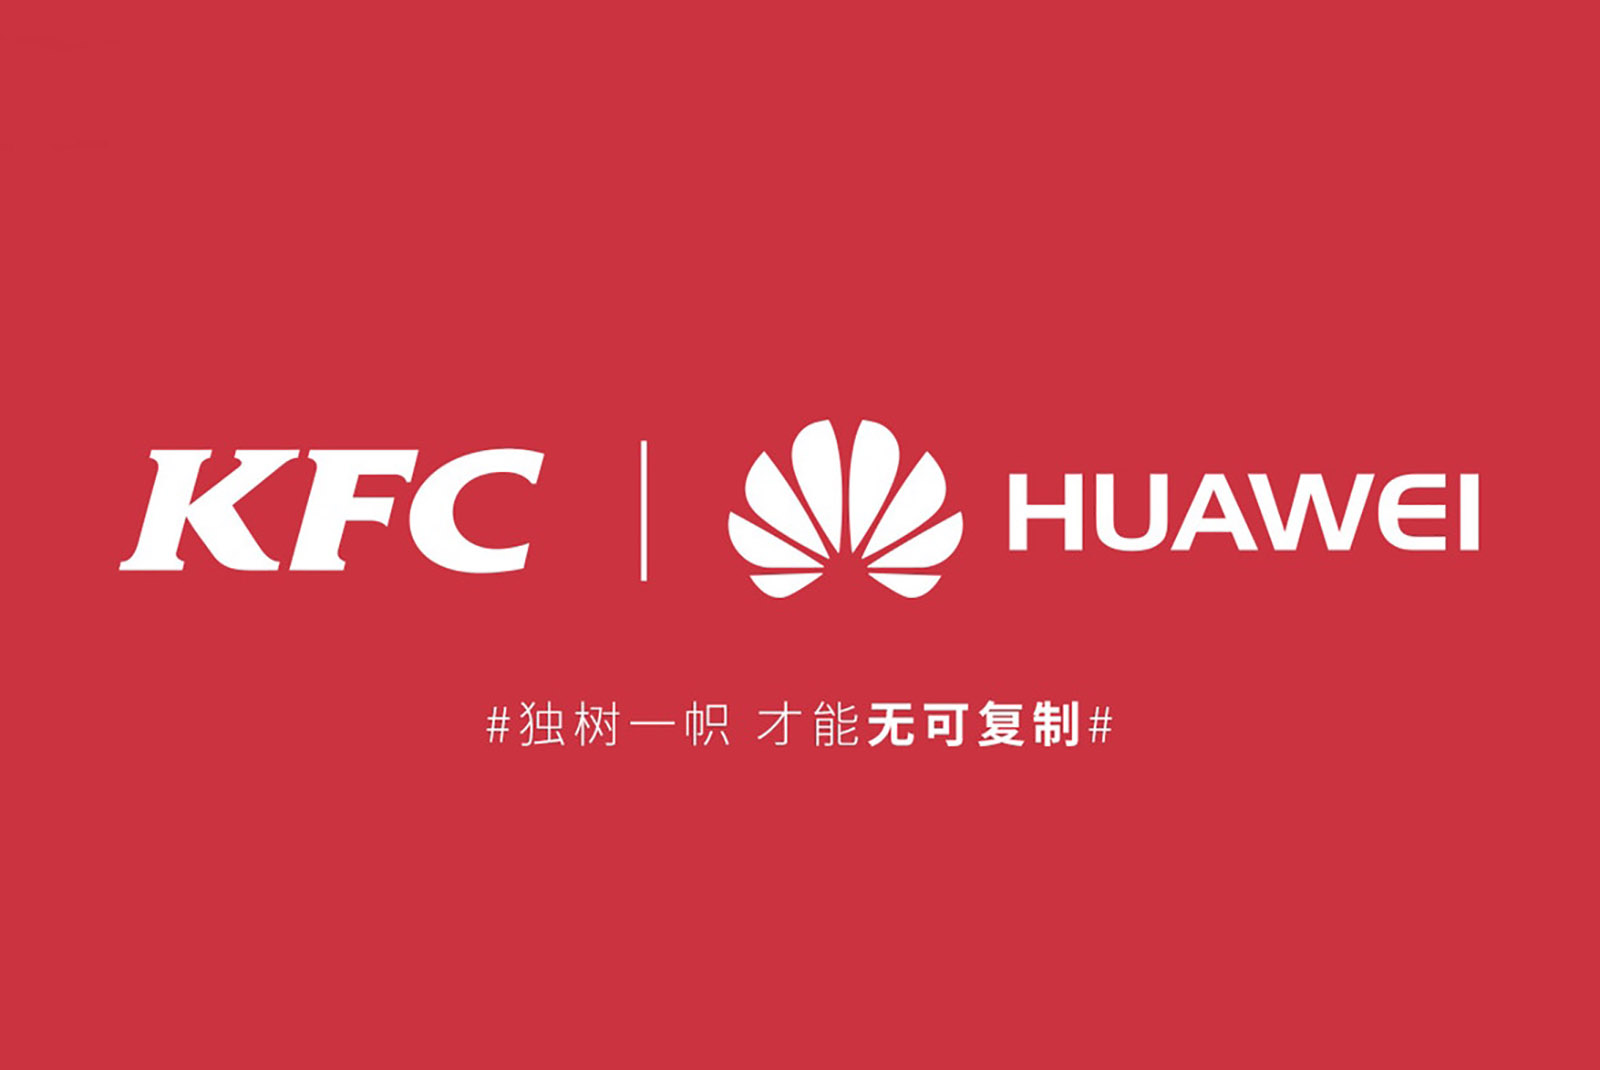 Huawei and KFC